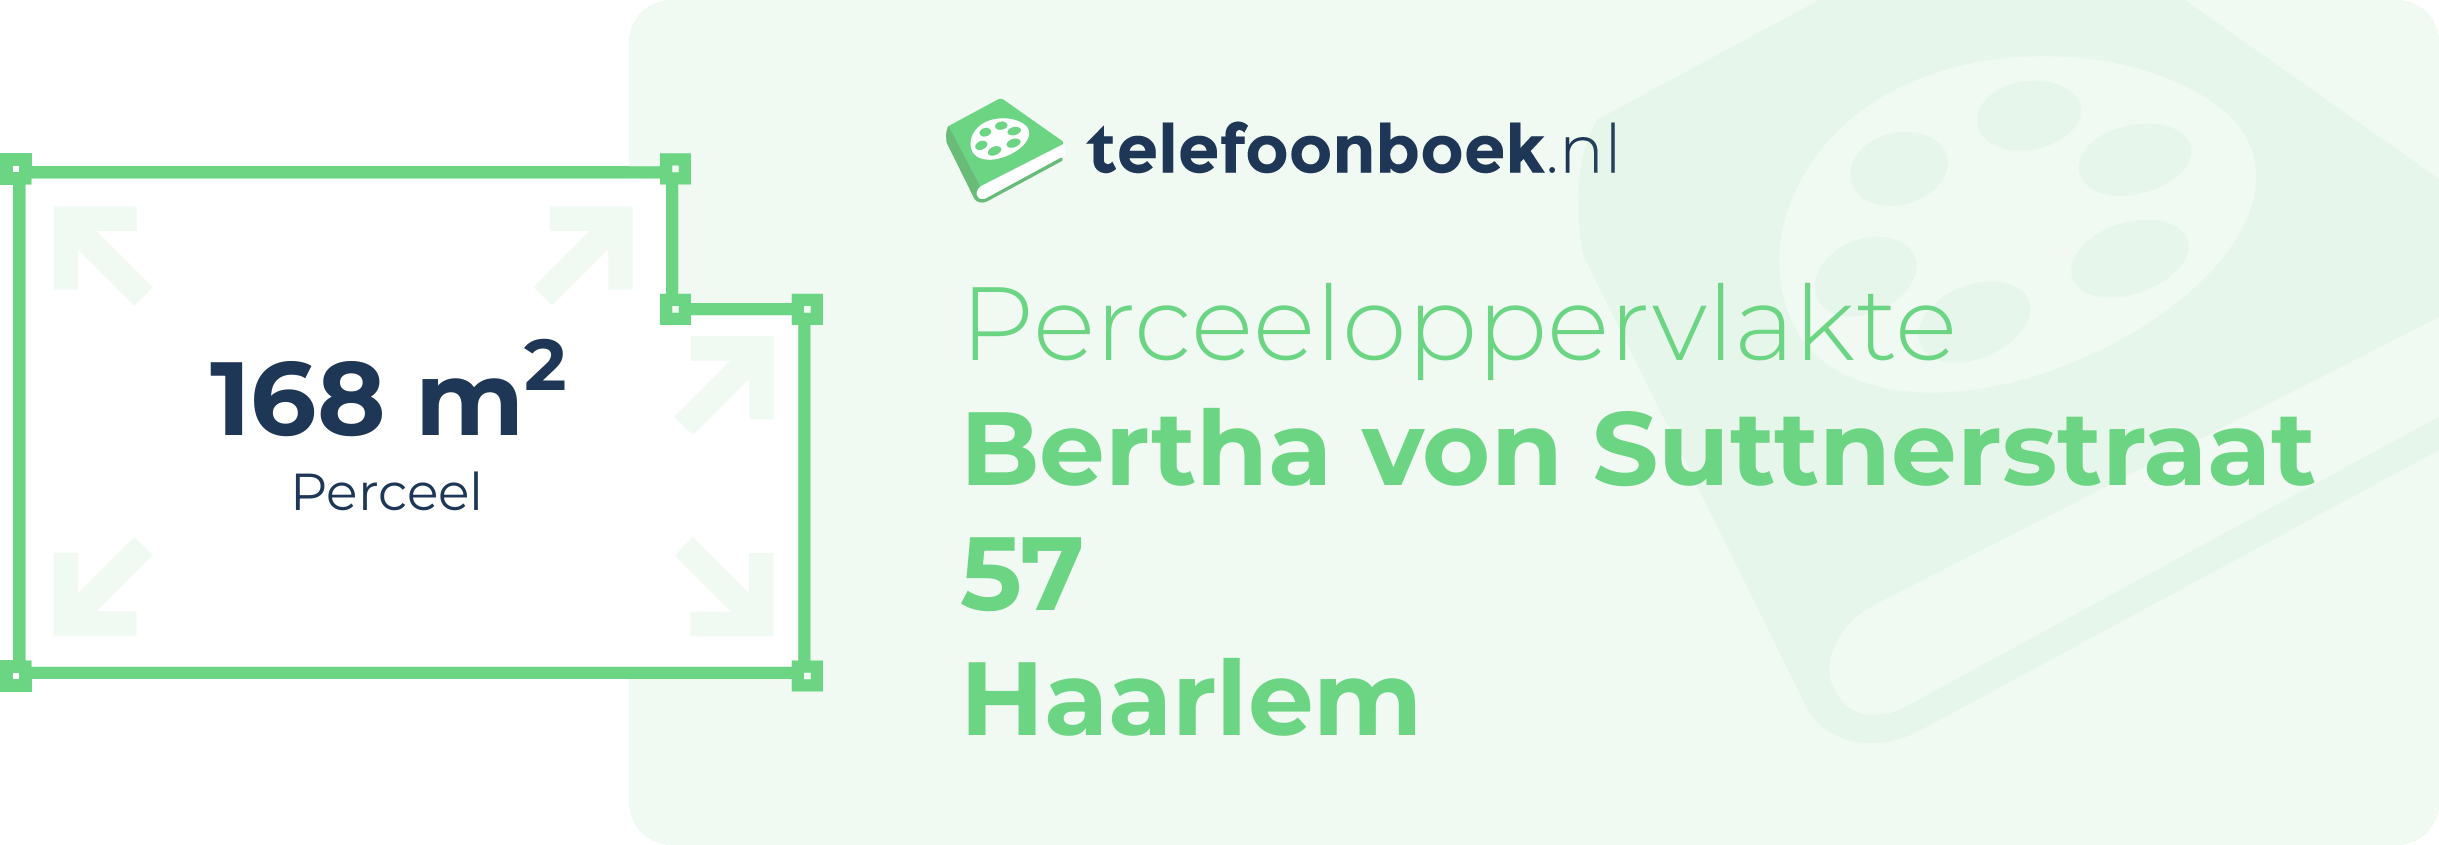 Perceeloppervlakte Bertha Von Suttnerstraat 57 Haarlem